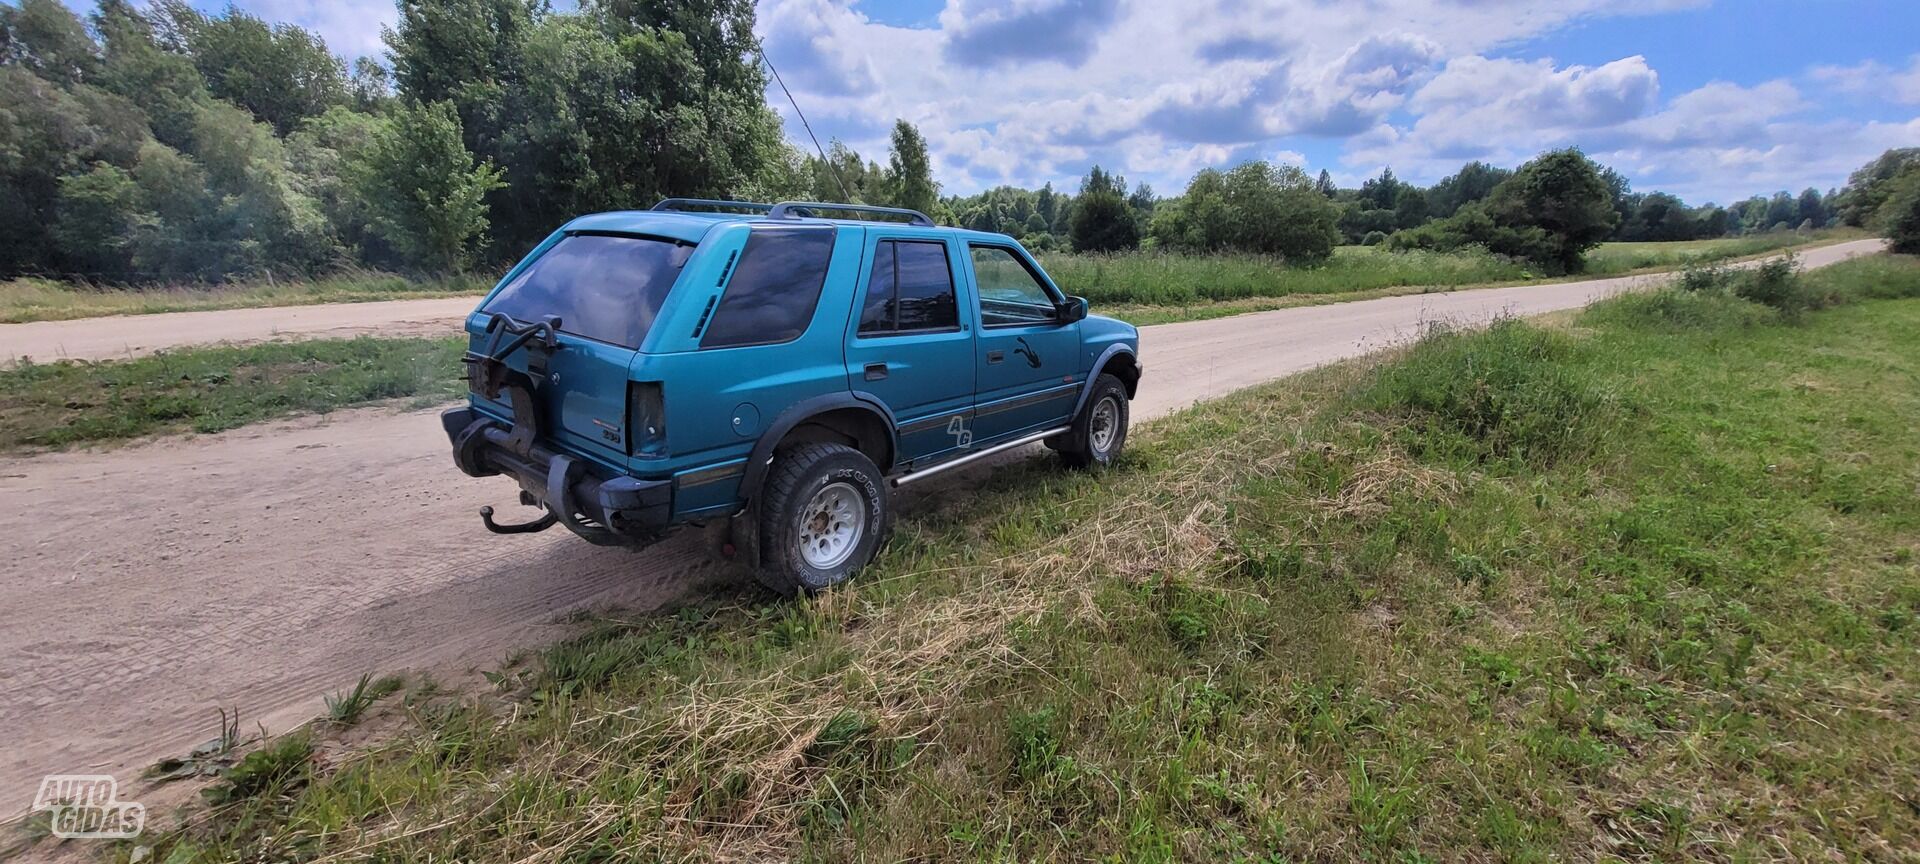 Opel Frontera 1996 y SUV